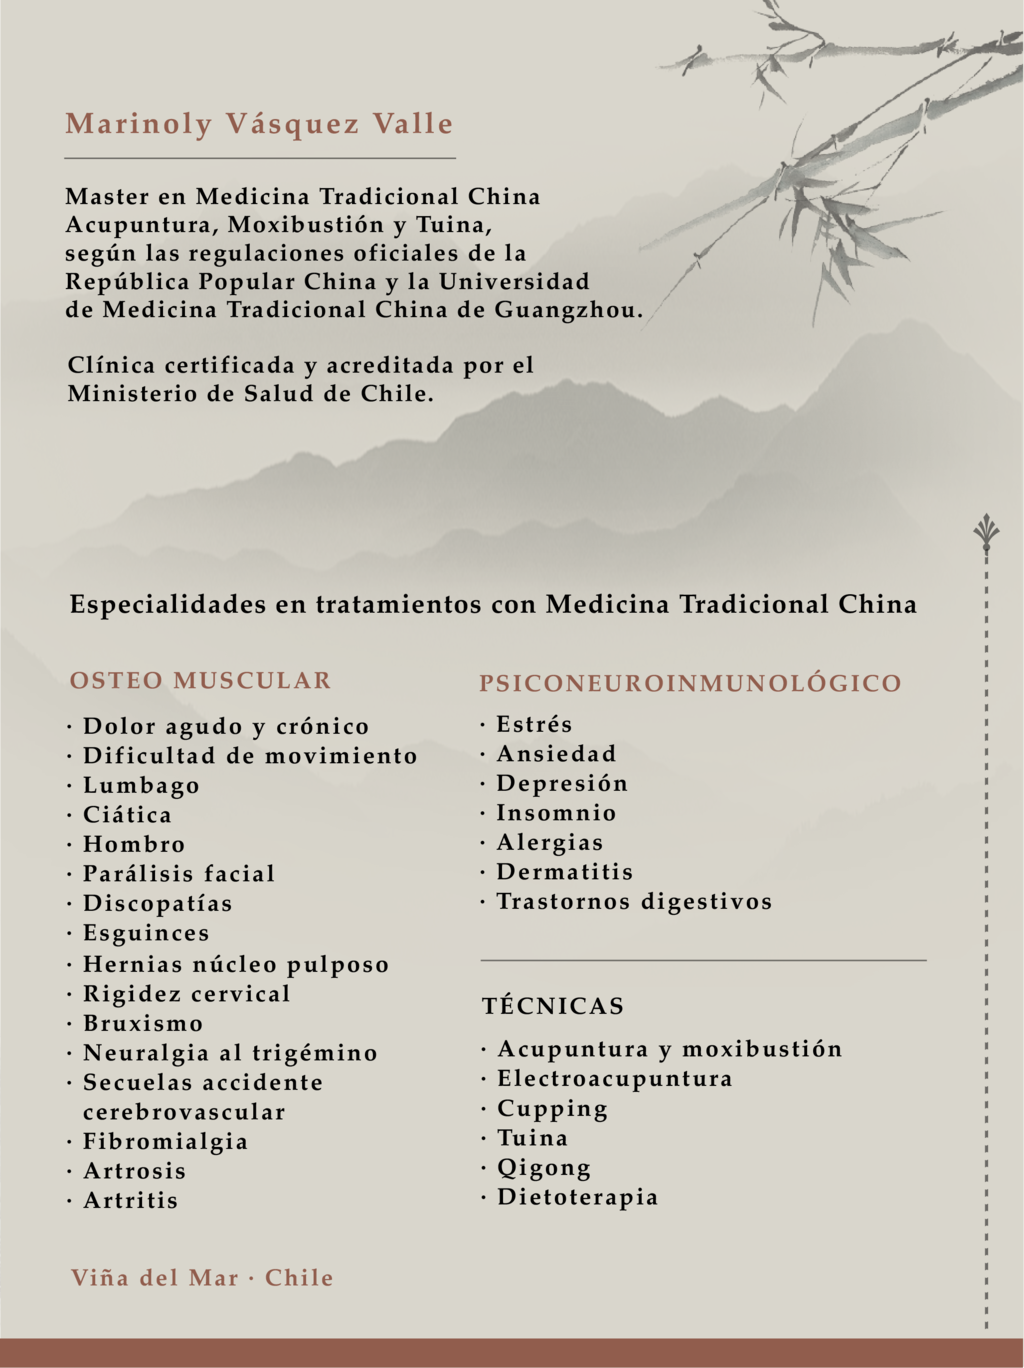 Centro Terapeutico de Medicina China